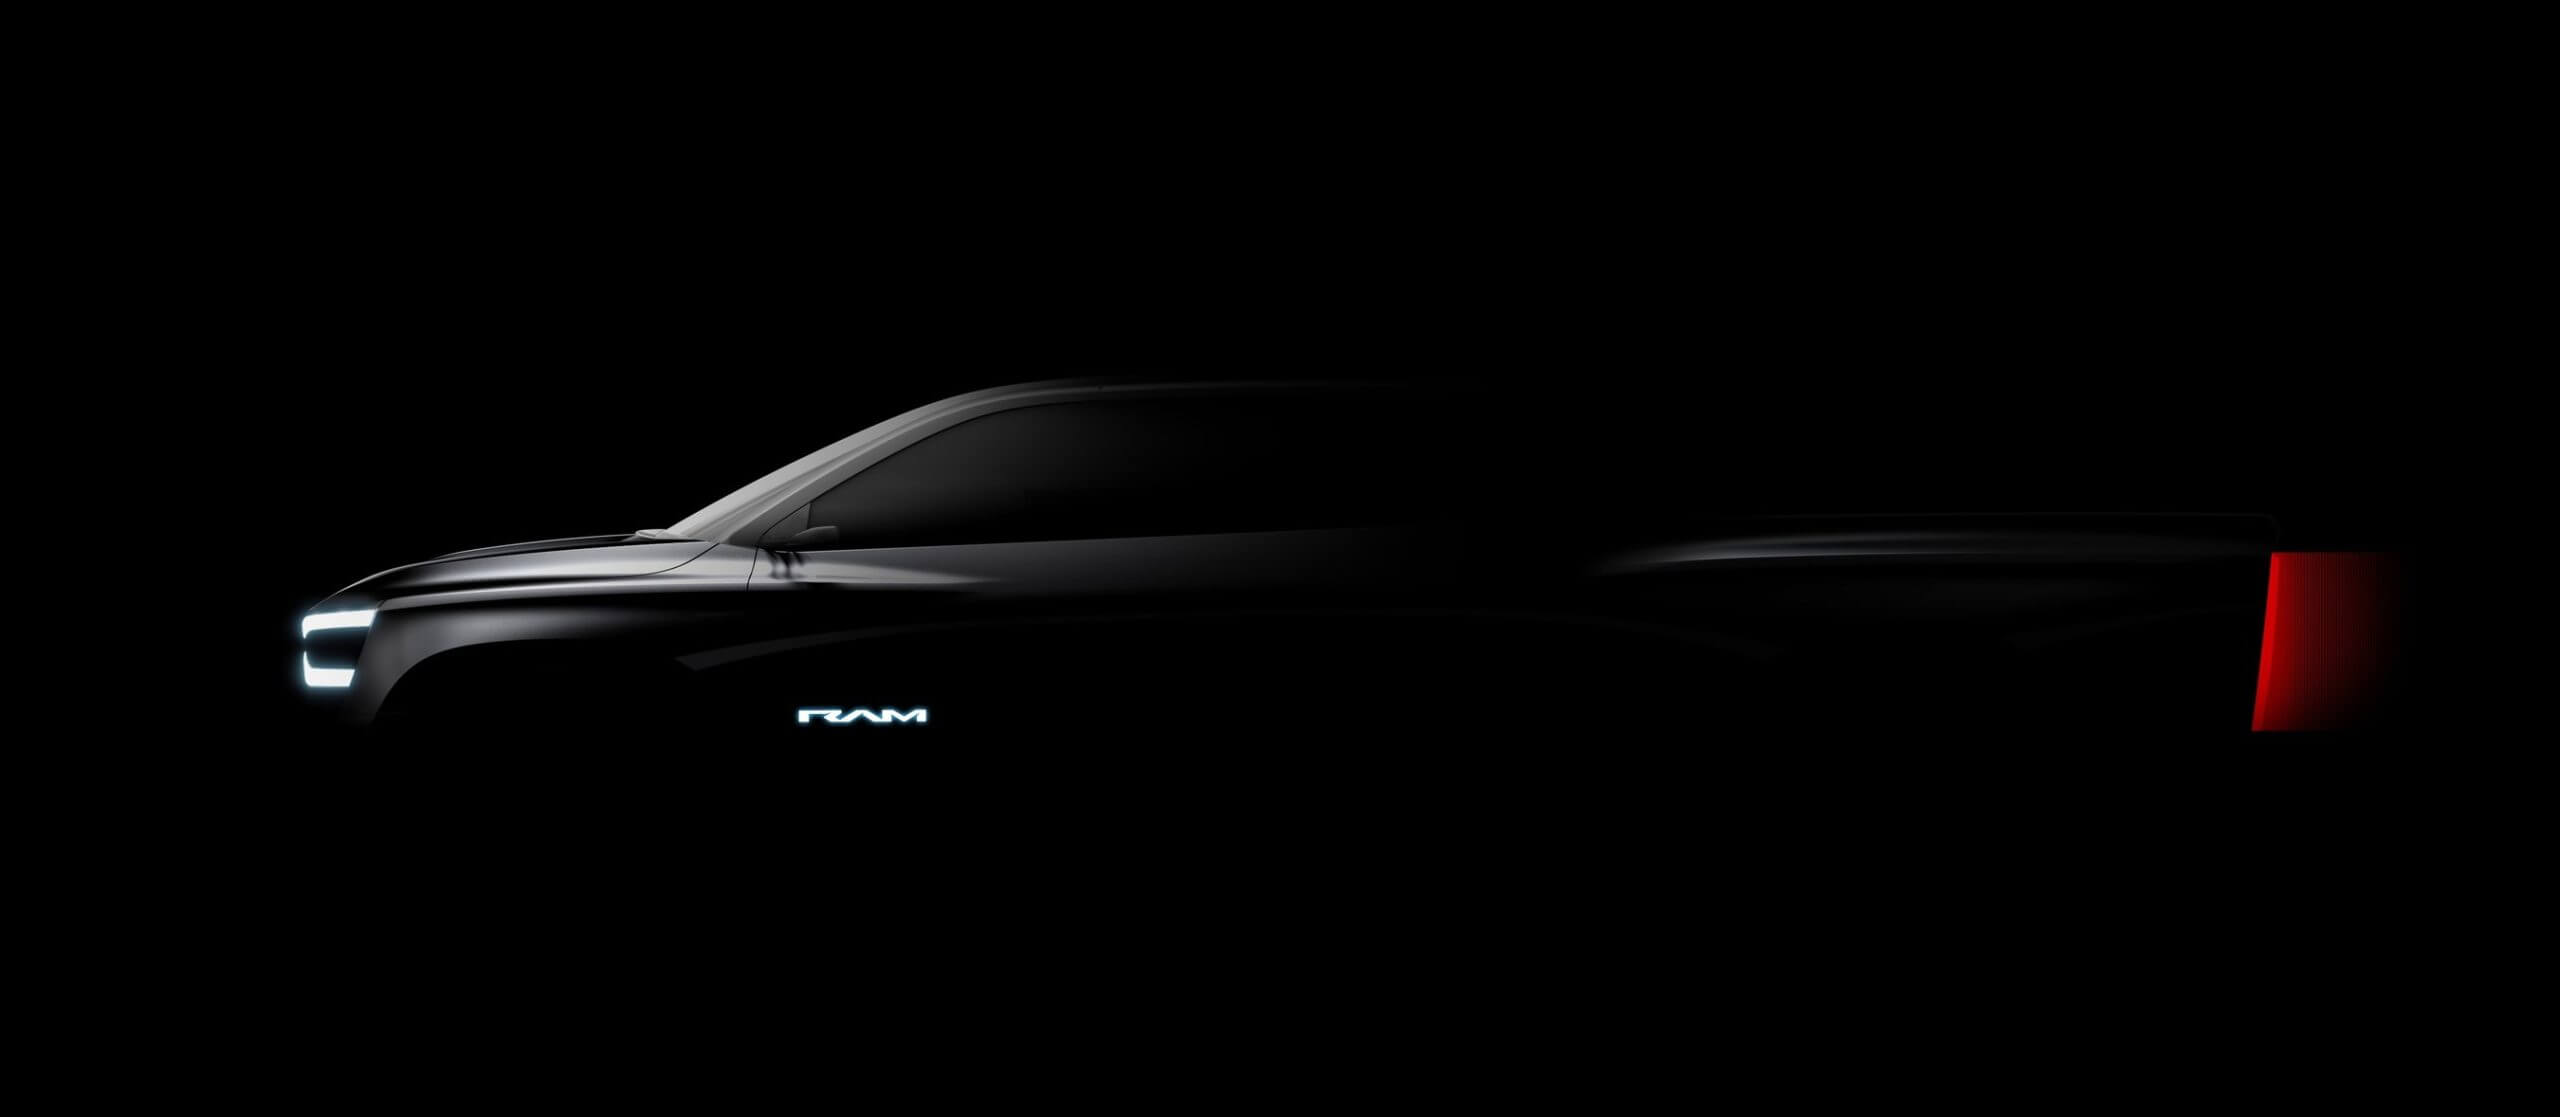 Dodge anuncia la revelación de RAM Revolution y sugiere otros vehículos eléctricos